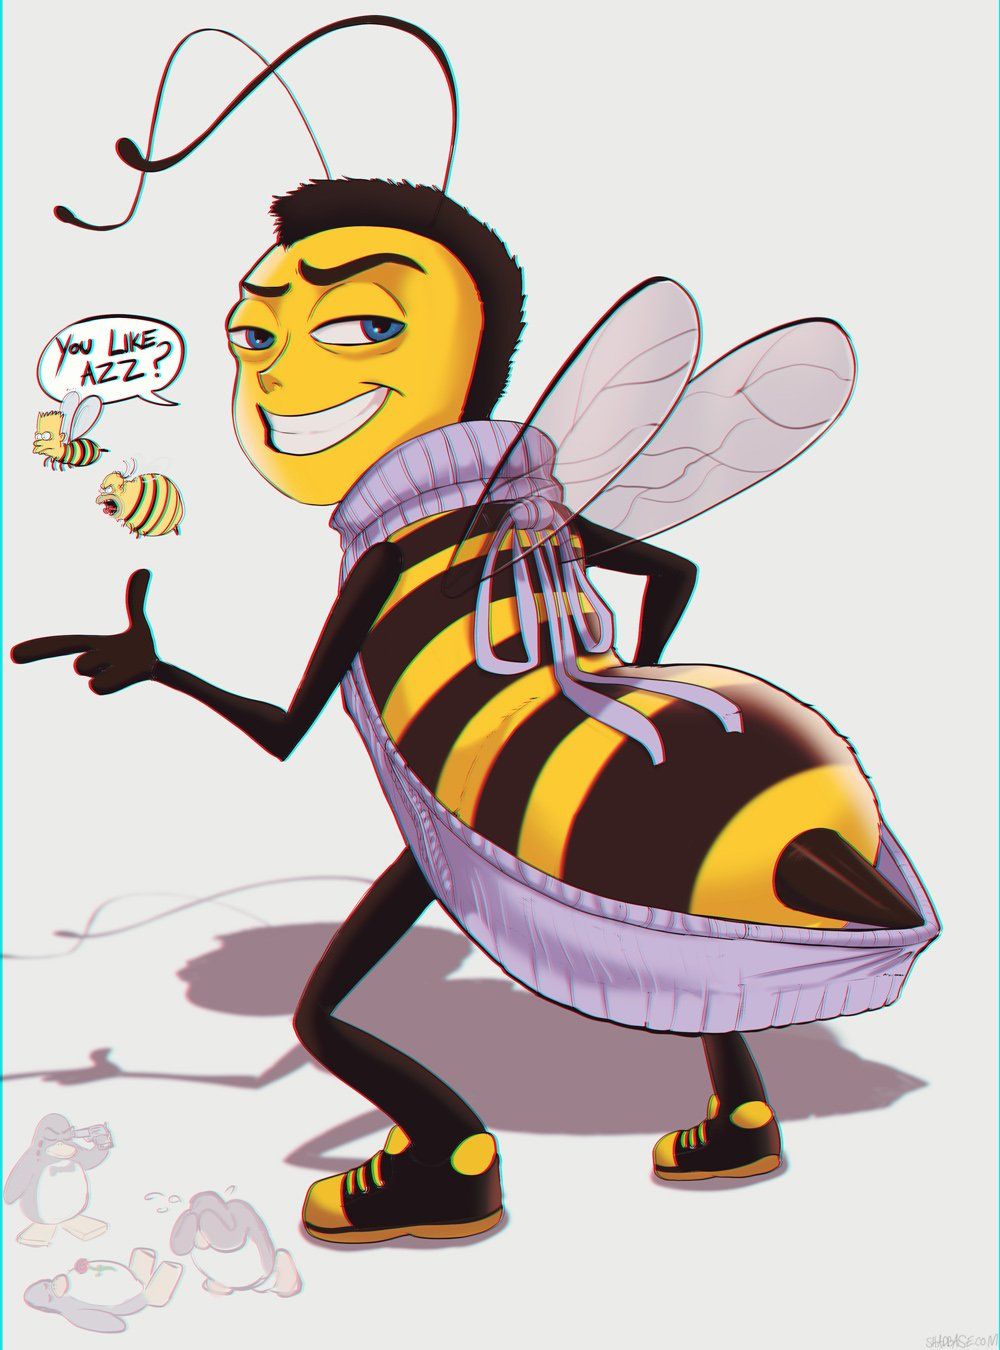 Bee cartoon